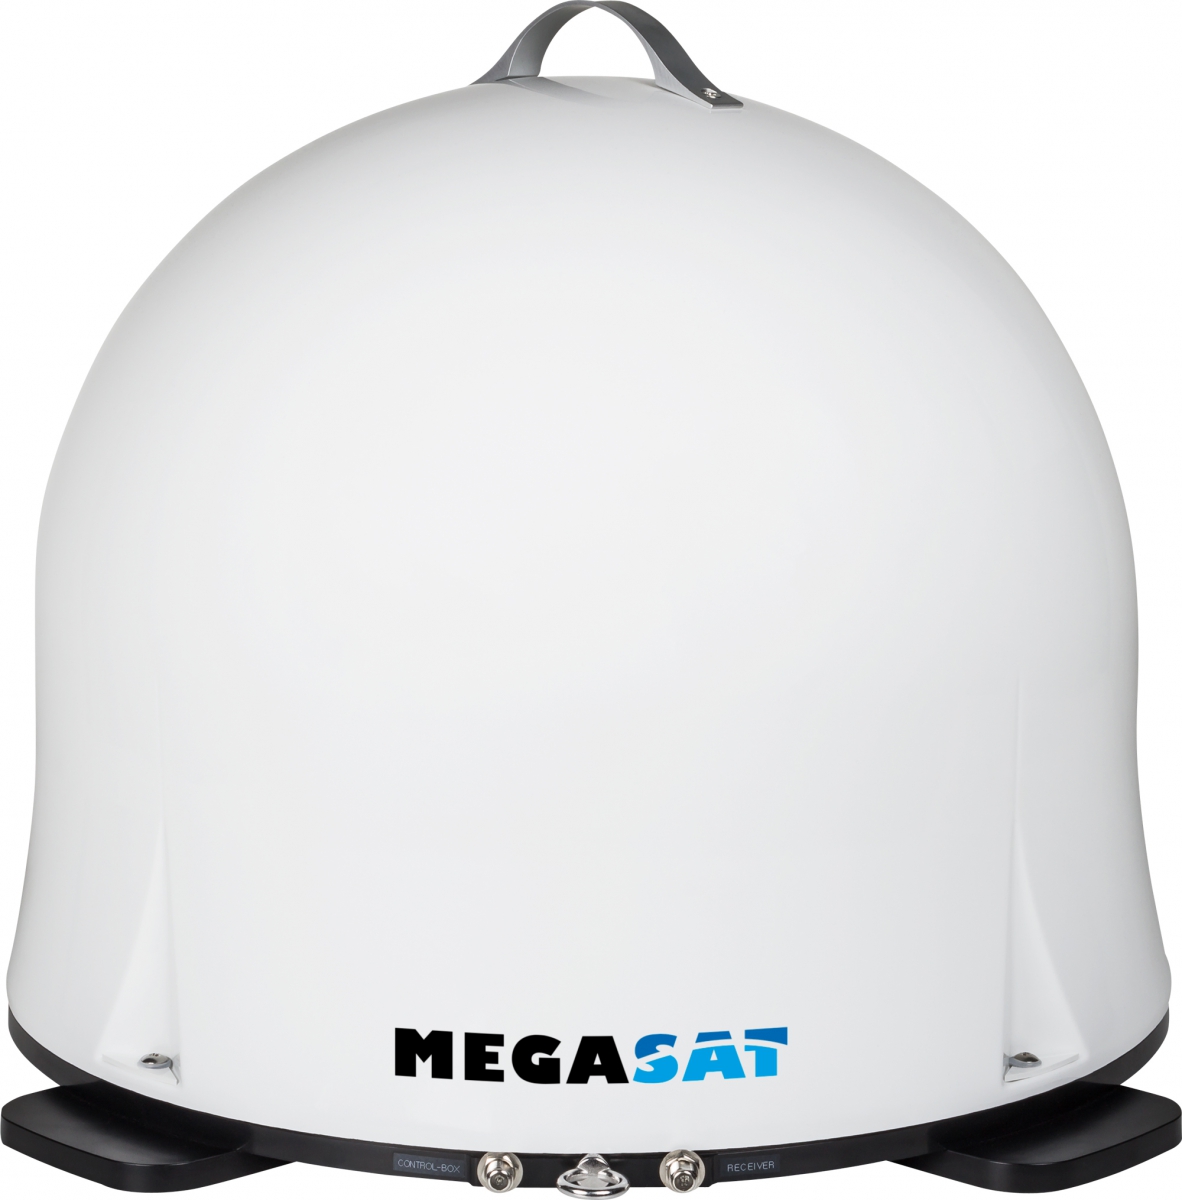 Megasat Campingman Portable 2 Sat-Anlage